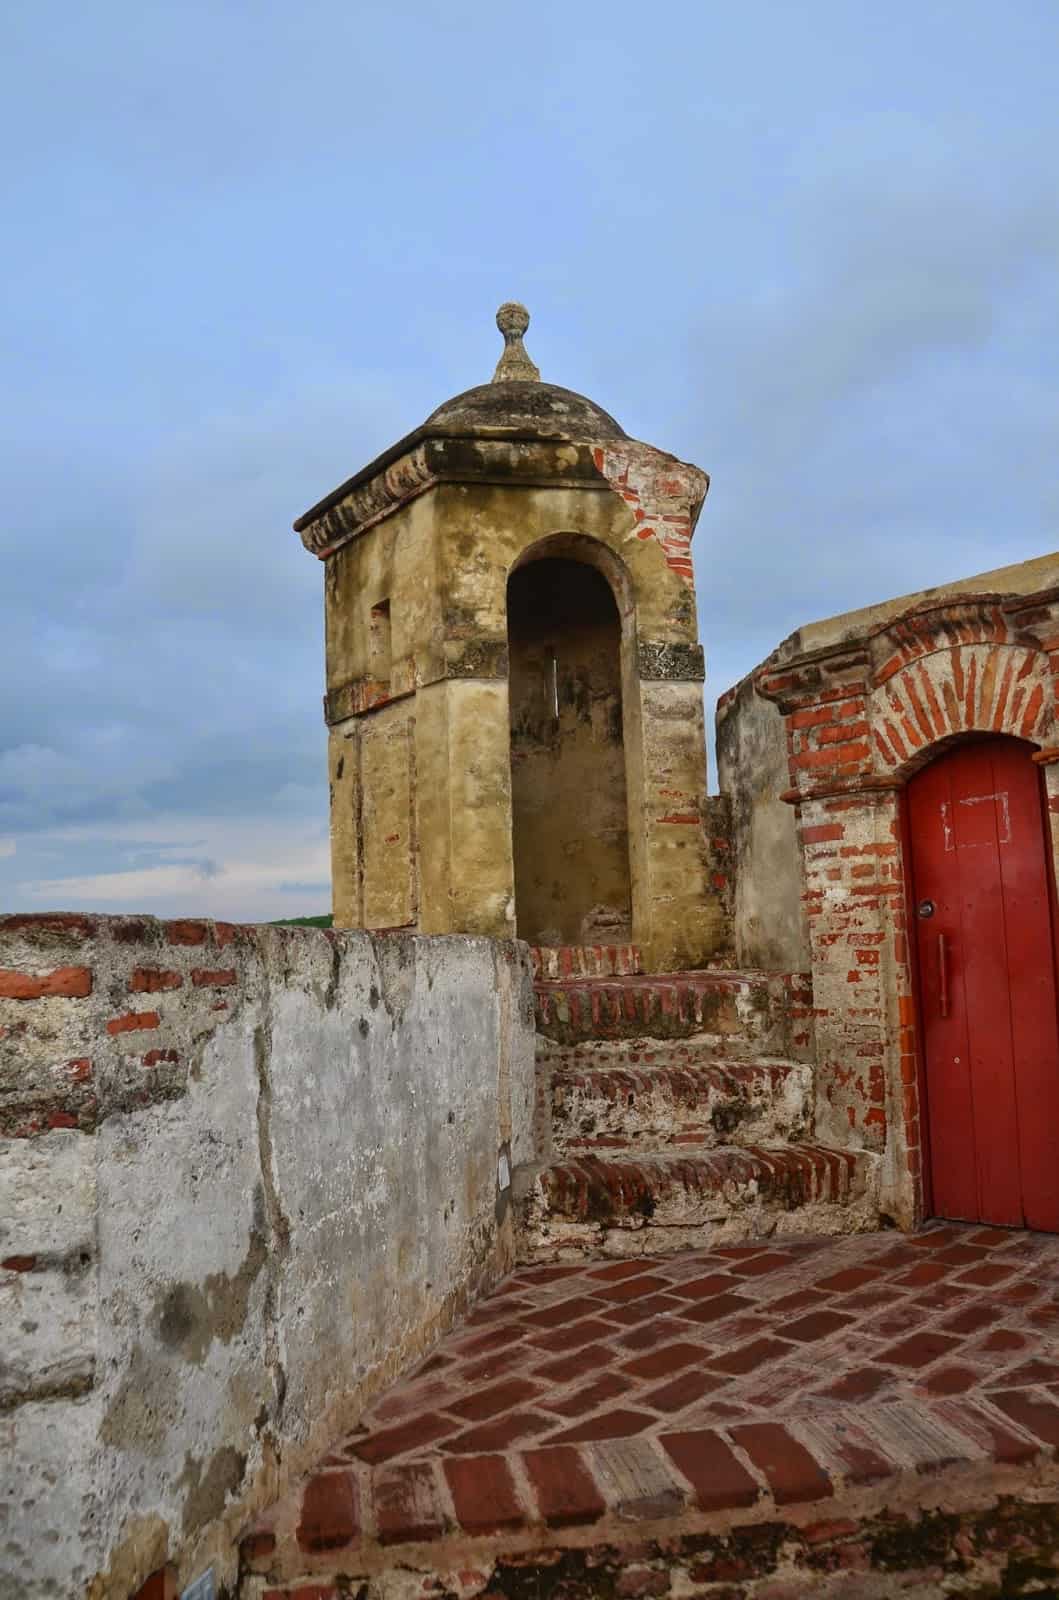 Sentry box at Castillo San Felipe de Barajas in Cartagena, Bolívar, Colombia